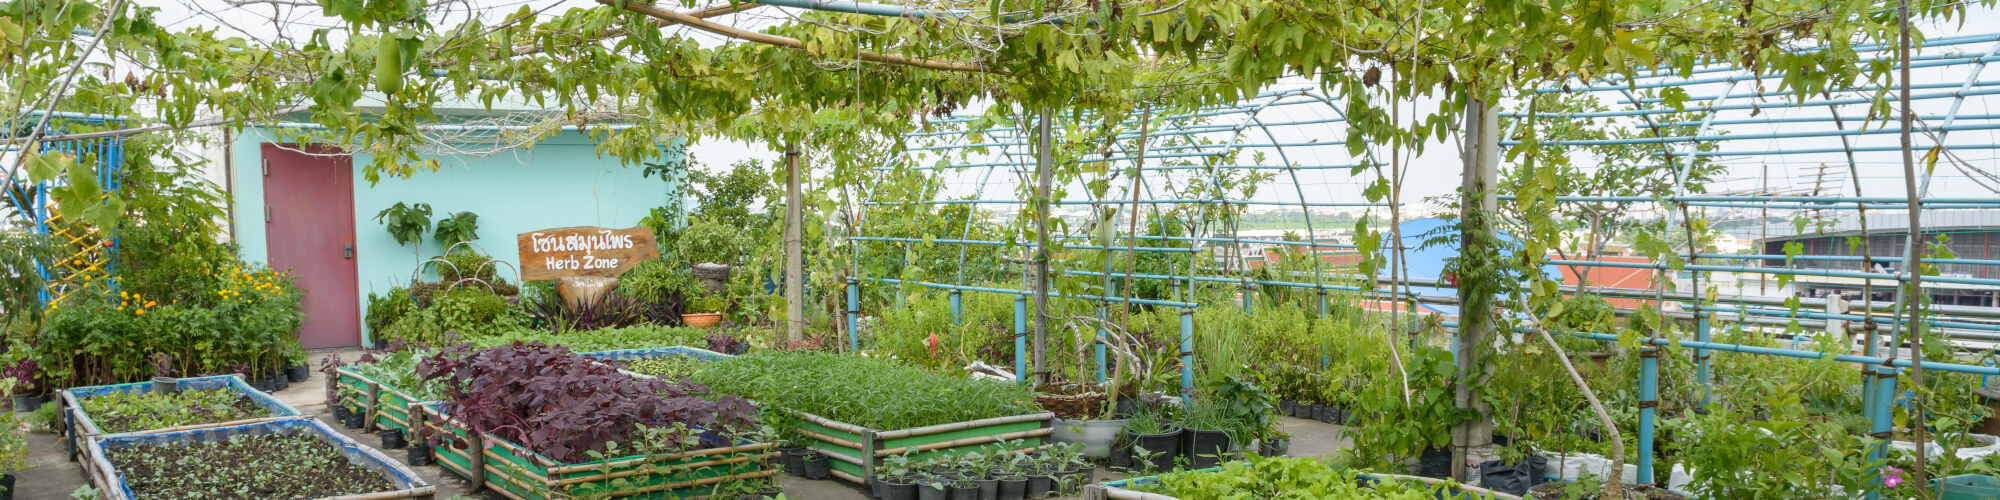 Rooftop-Farming: Die haben Nutzpflanzen auf der Hütte  